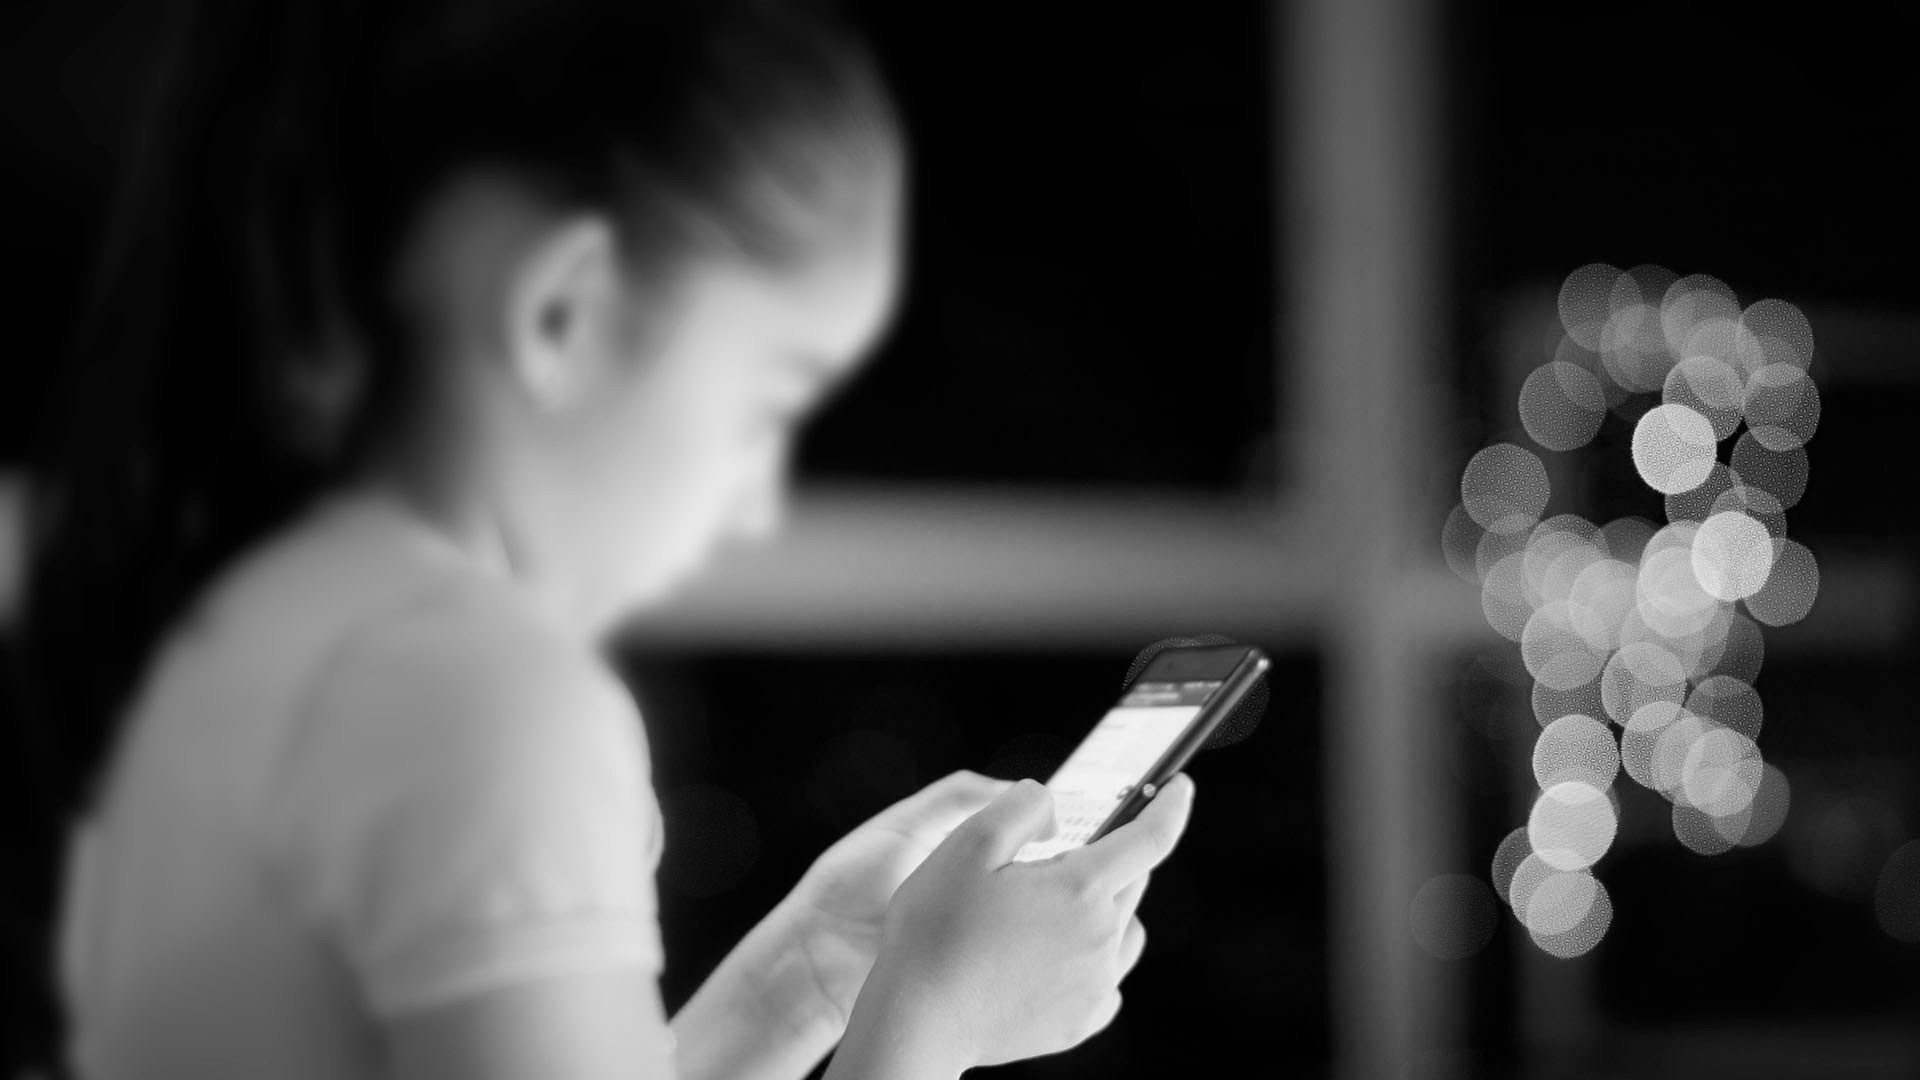 Una nena de 10 años, víctima de acoso sexual a través del celular (Shutterstock)